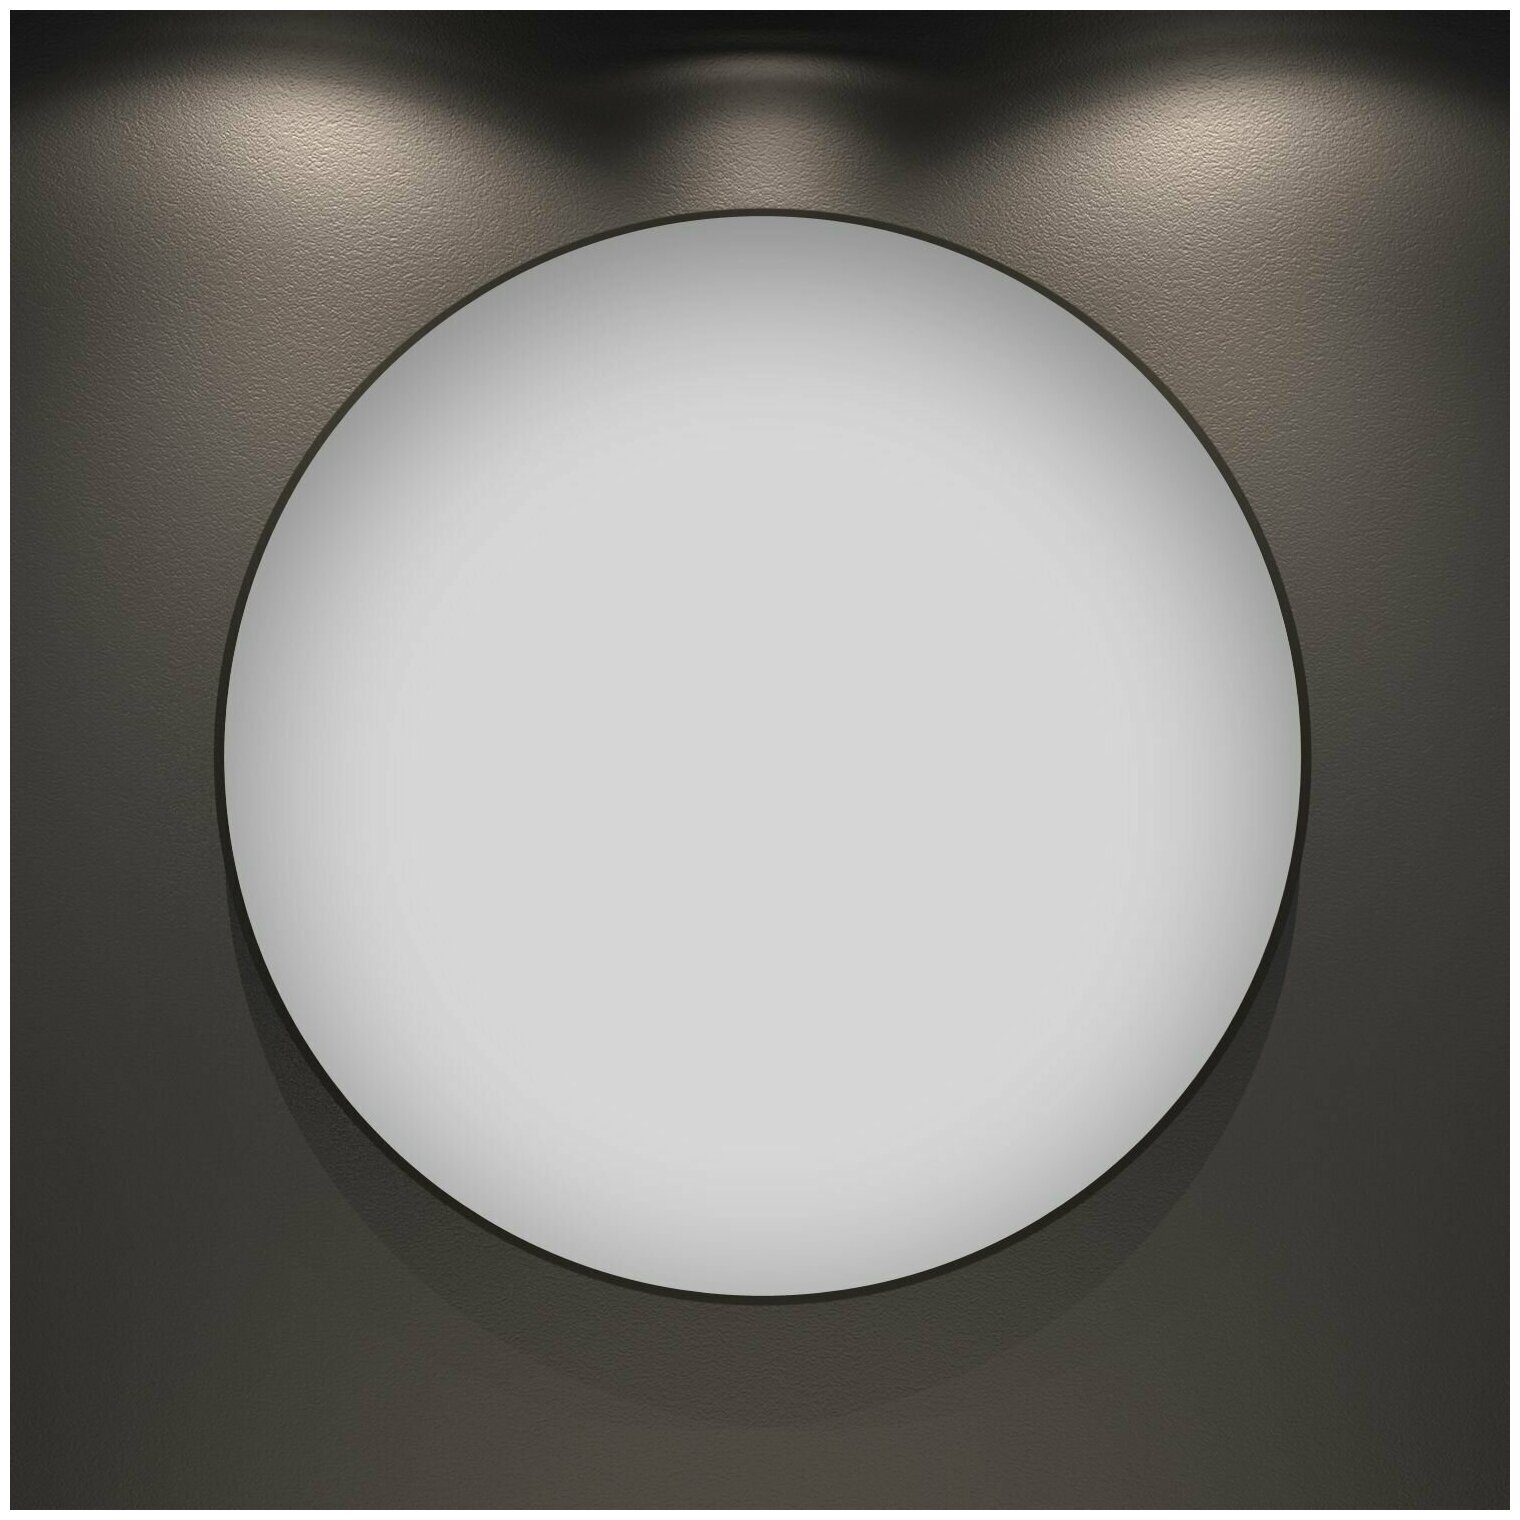 Настенное зеркало в ванную Wellsee 7 Rays' Spectrum 172200080 : влагостойкое круглое зеркало 90 см с черным матовым контуром